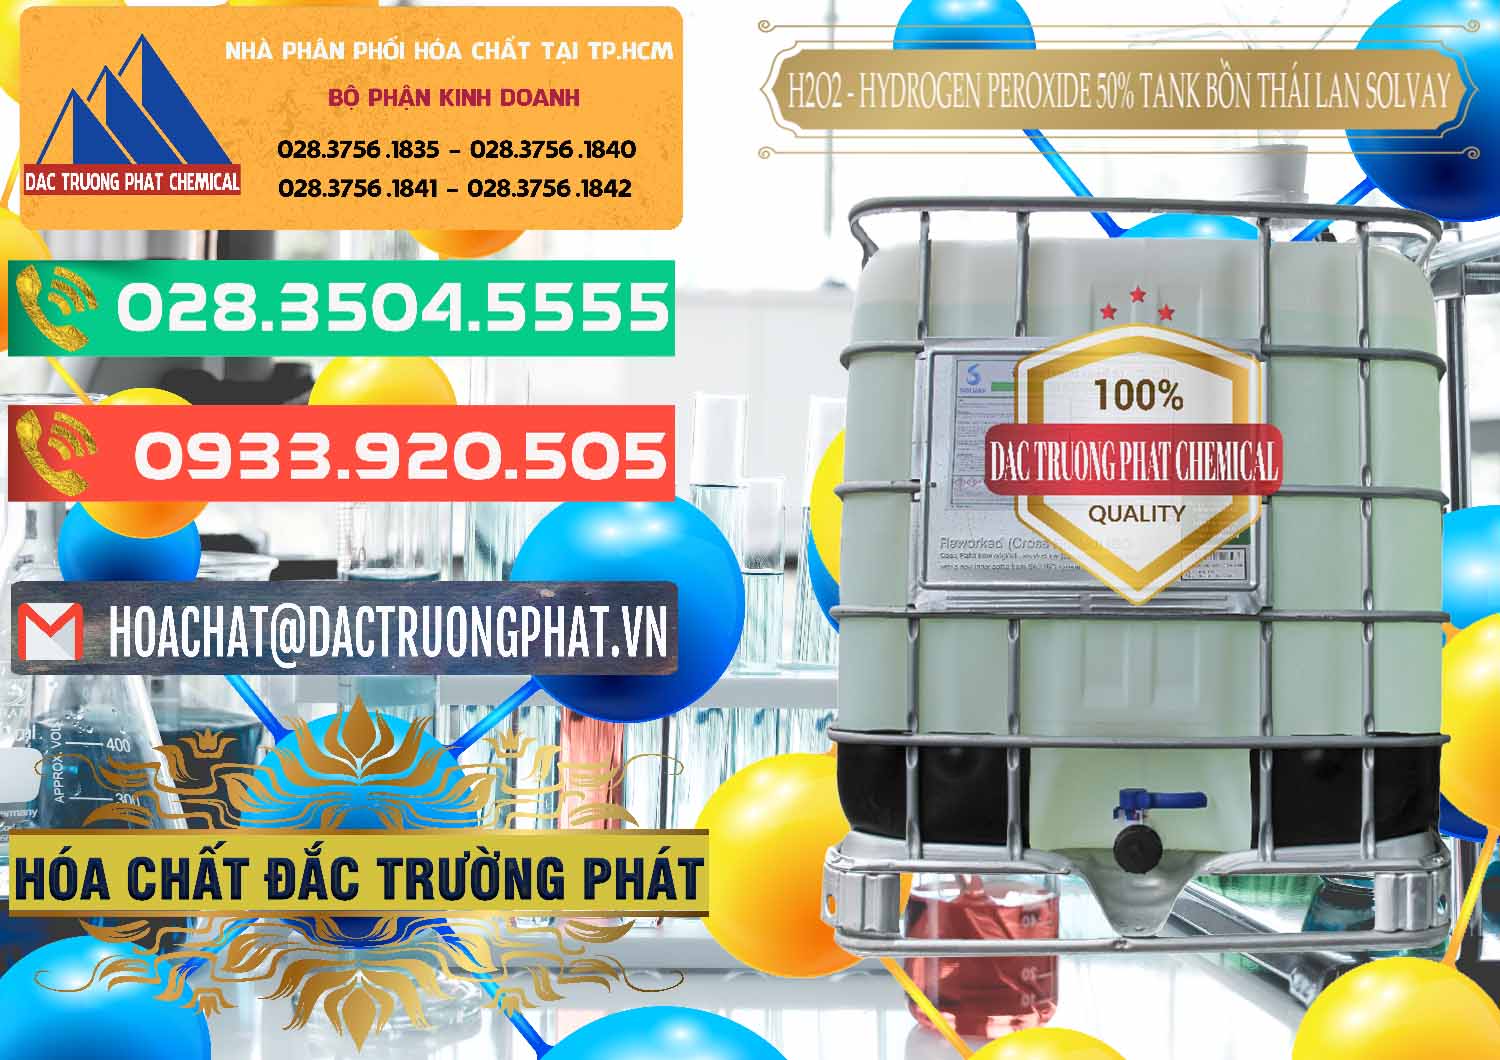 Công ty bán - cung ứng H2O2 - Hydrogen Peroxide 50% Tank IBC Bồn Thái Lan Solvay - 0072 - Kinh doanh - phân phối hóa chất tại TP.HCM - congtyhoachat.com.vn